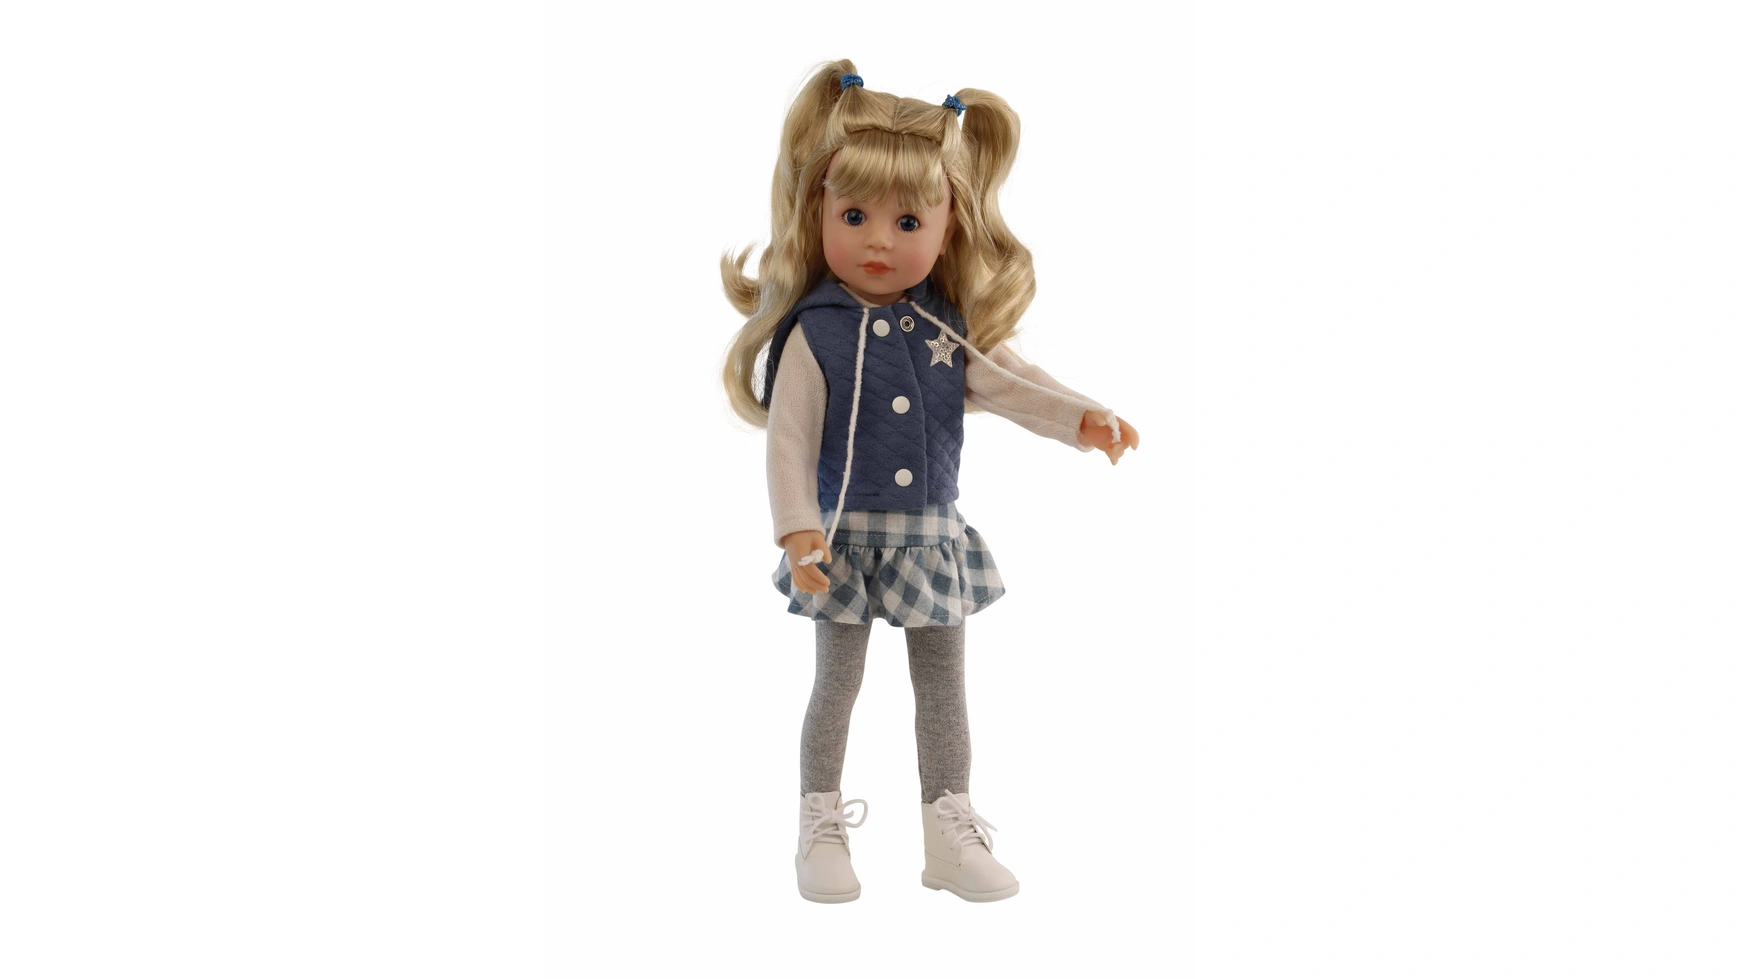 Schildkroet-Puppen Стоячая Кукла Йелла 46 см светлые волосы, спортивная одежда